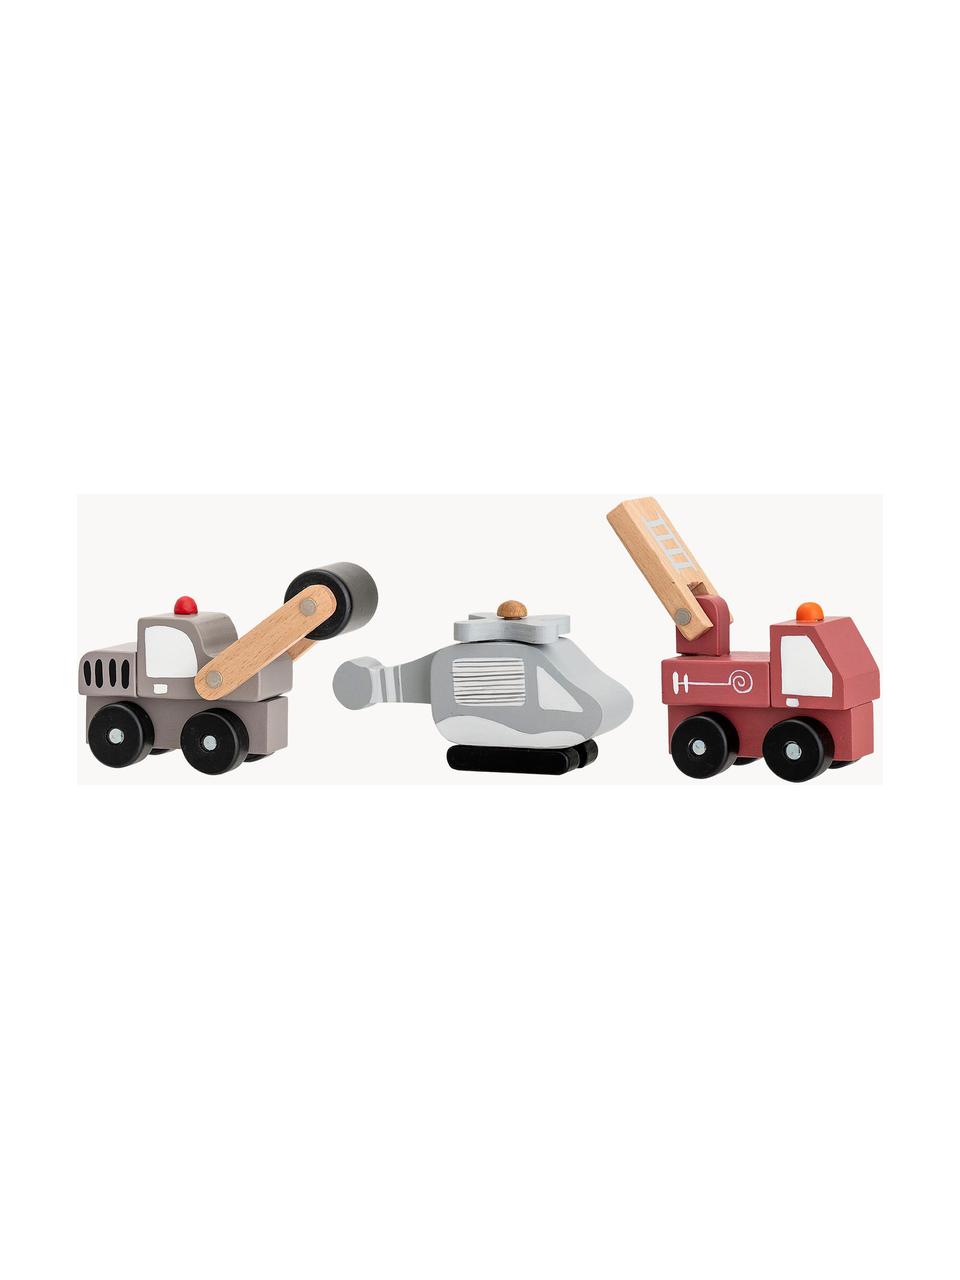 Spielzeugautos Bruno, 3er-Set, Mitteldichte Holzfaserplatte (MDF), Schichtholz, Metall, Bunt, Set mit verschiedenen Größen